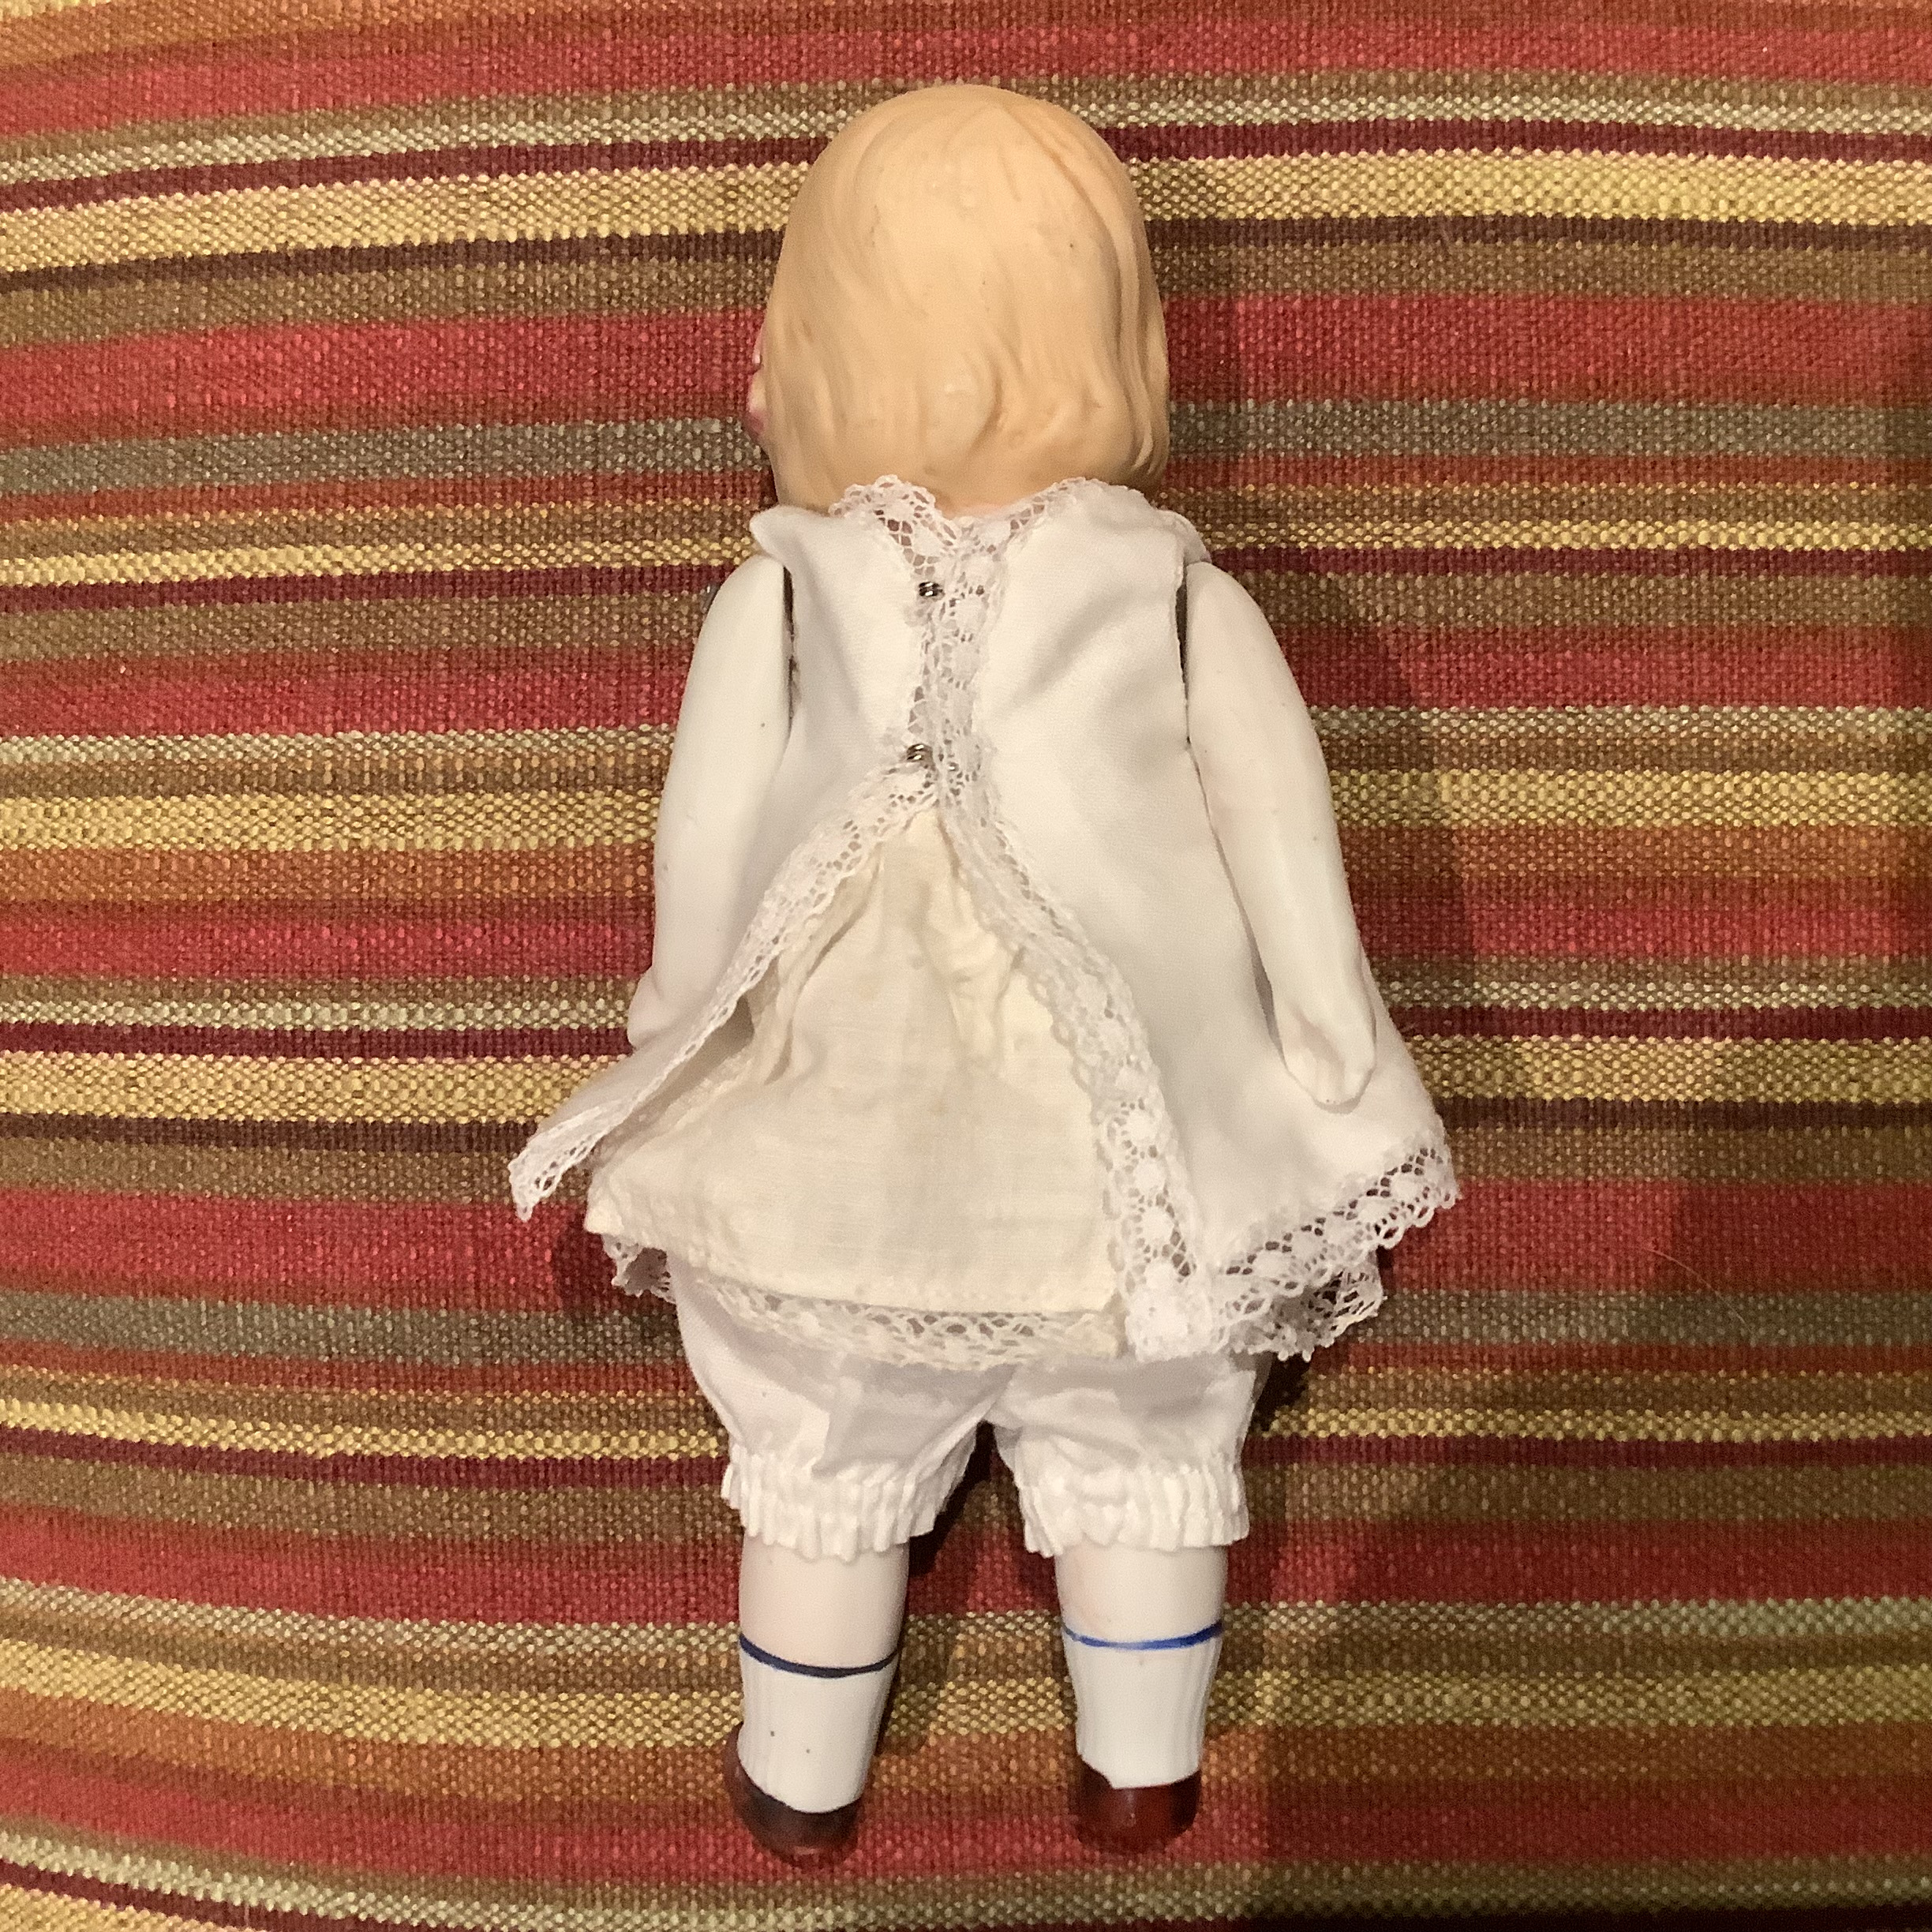 Vintage girl doll back